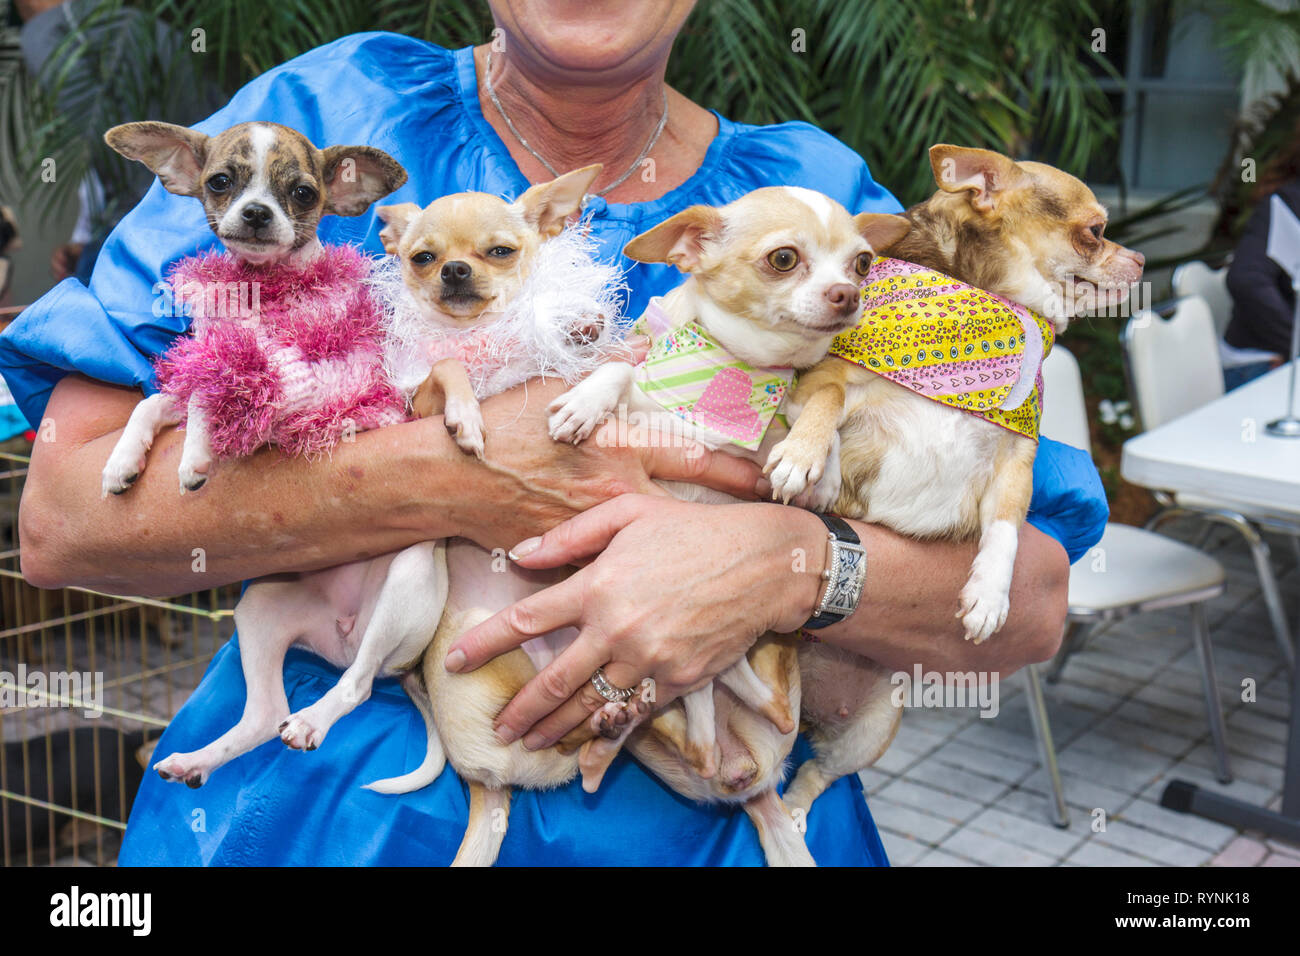 Miami Florida,Temple Israël,Bow Wow Palooza InterFaith Bénédiction des animaux,propriétaire,chien,quatre chiens,animal,Chihuahua,jouet race,femme femme femme,tenue Banque D'Images